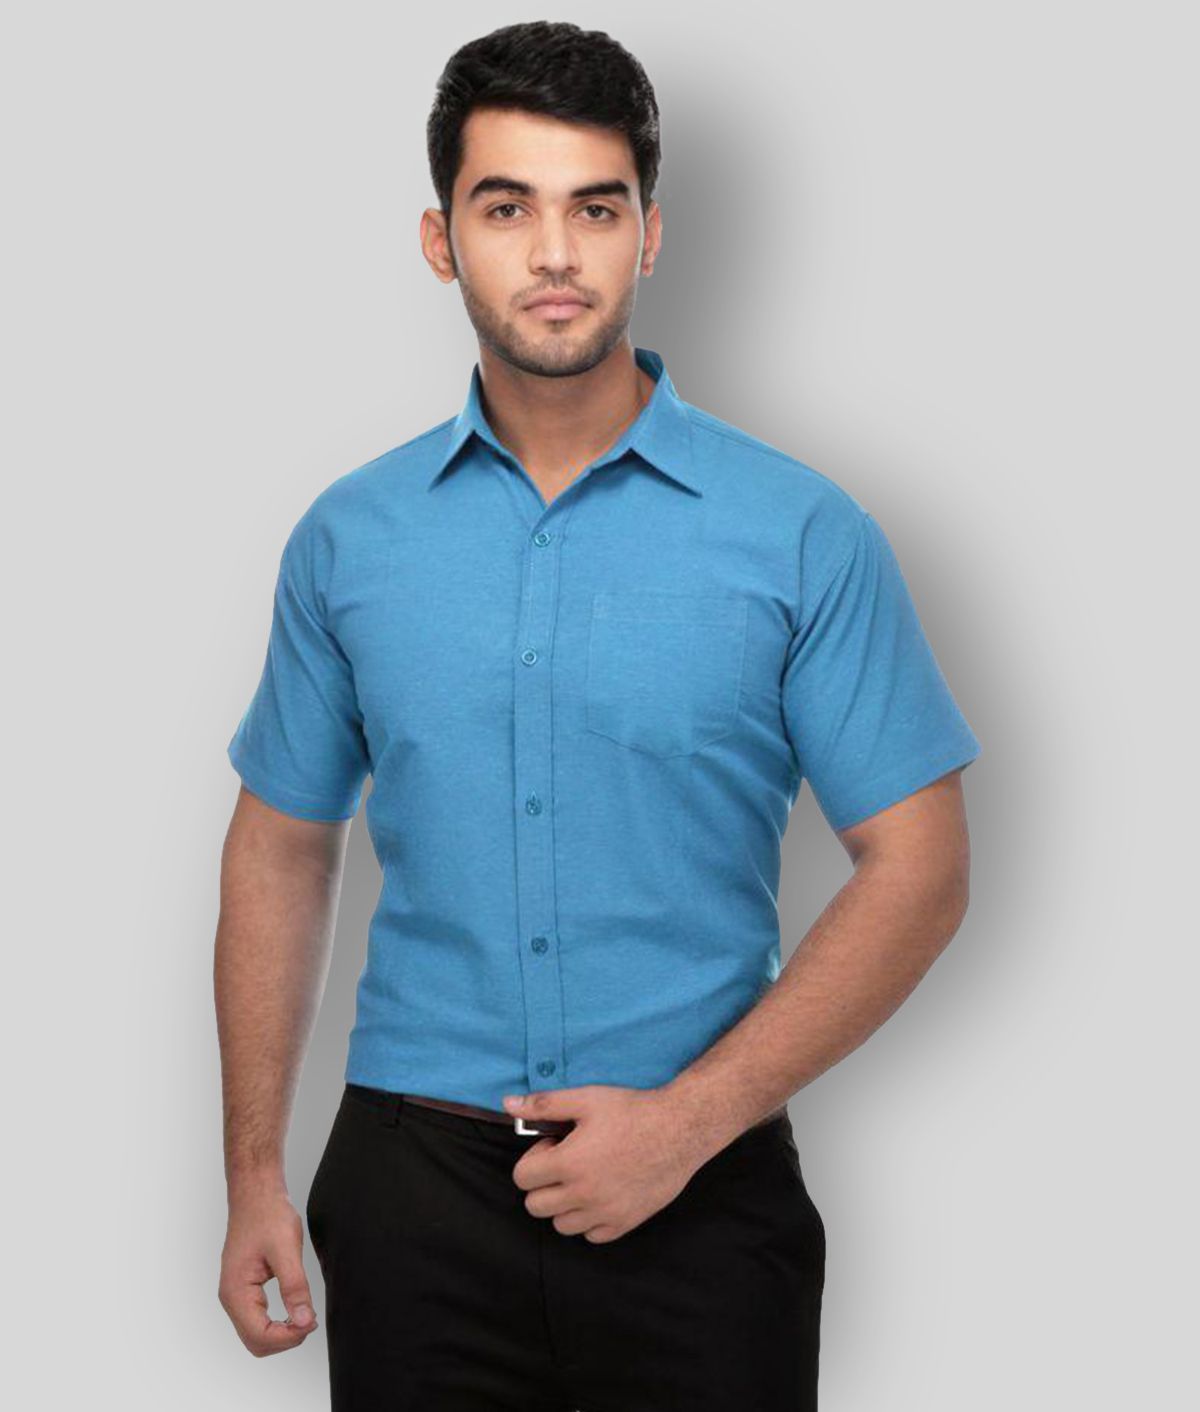     			DESHBANDHU DBK - Blue Cotton Regular Fit Men's Formal Shirt (Pack of 1)